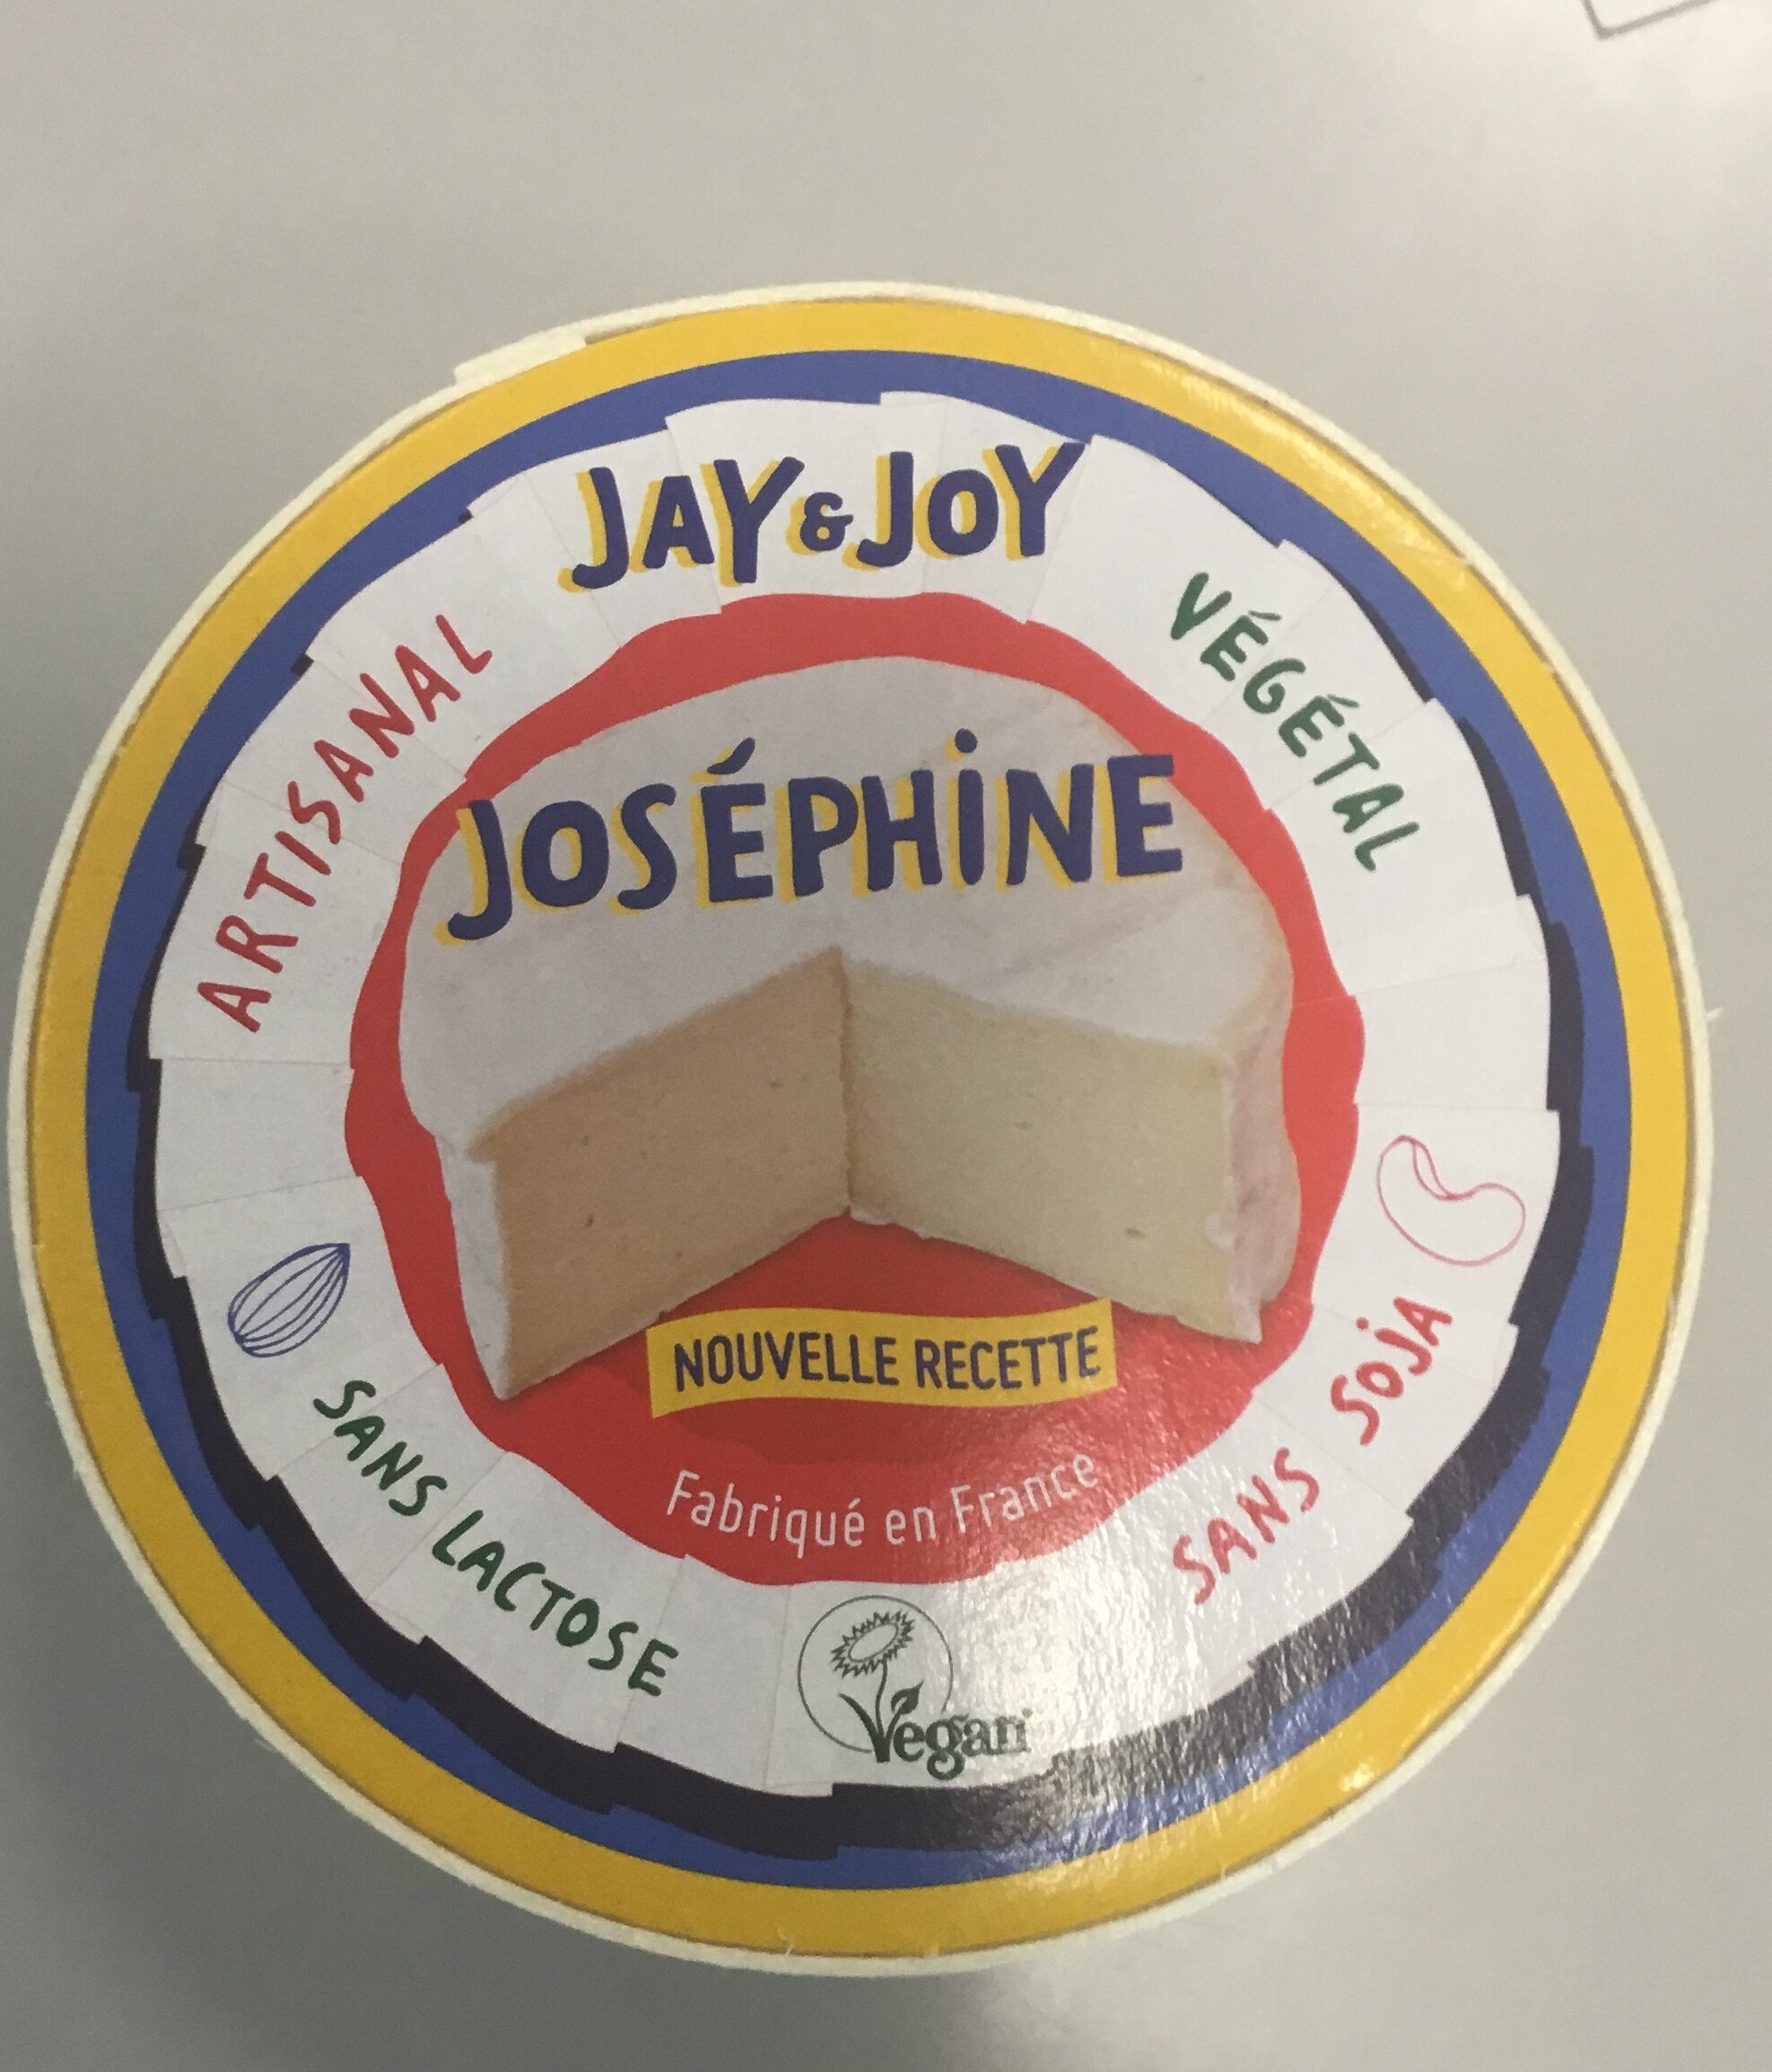 Joséphine nouvelle recette - Product - fr